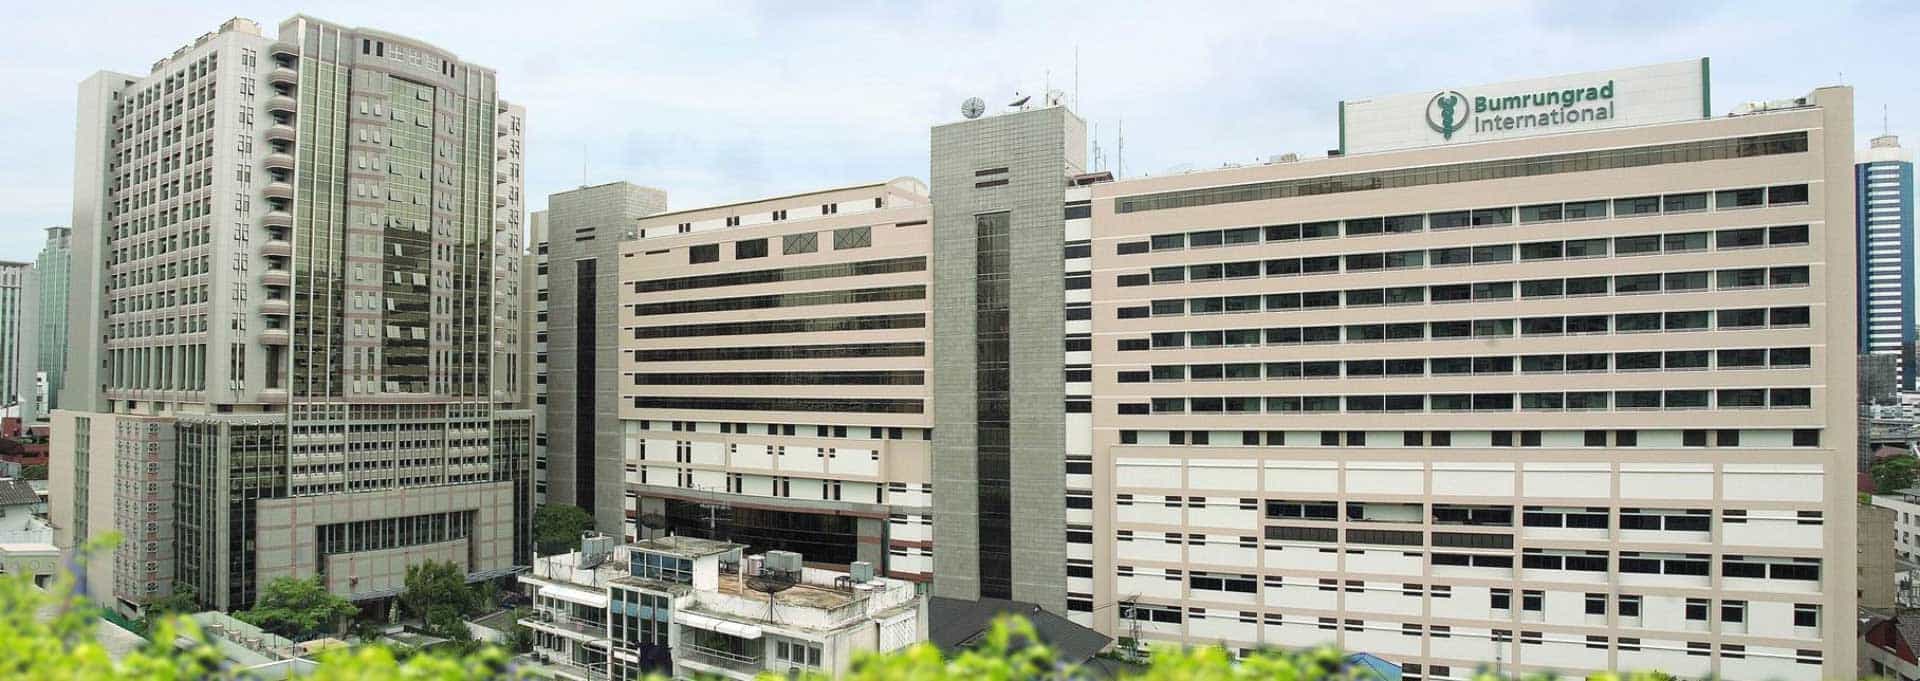 Bumrungrad hospital